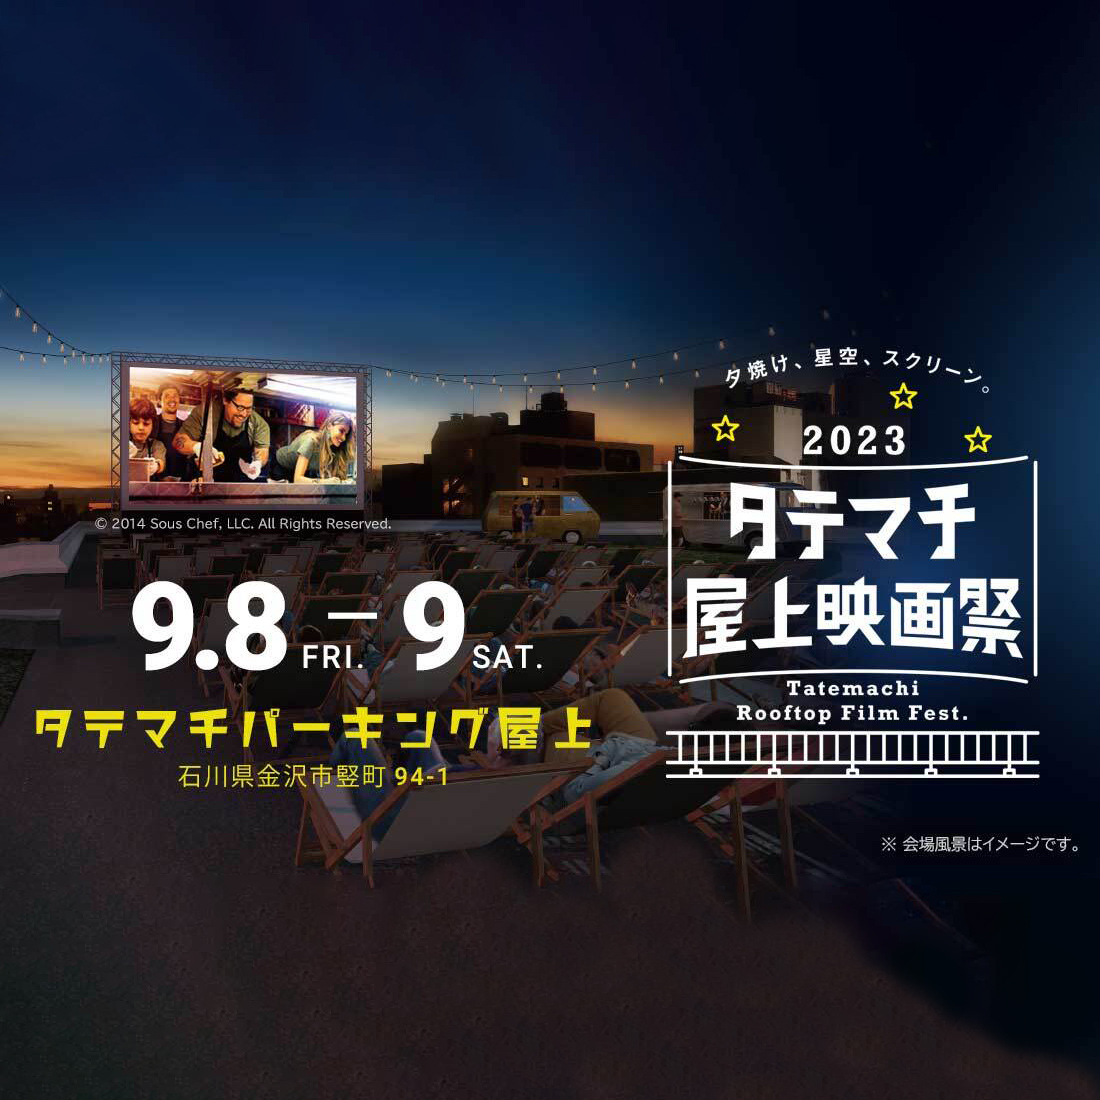 タテマチ屋上映画祭2023 9/8(金)、9/9(土)に開催!!